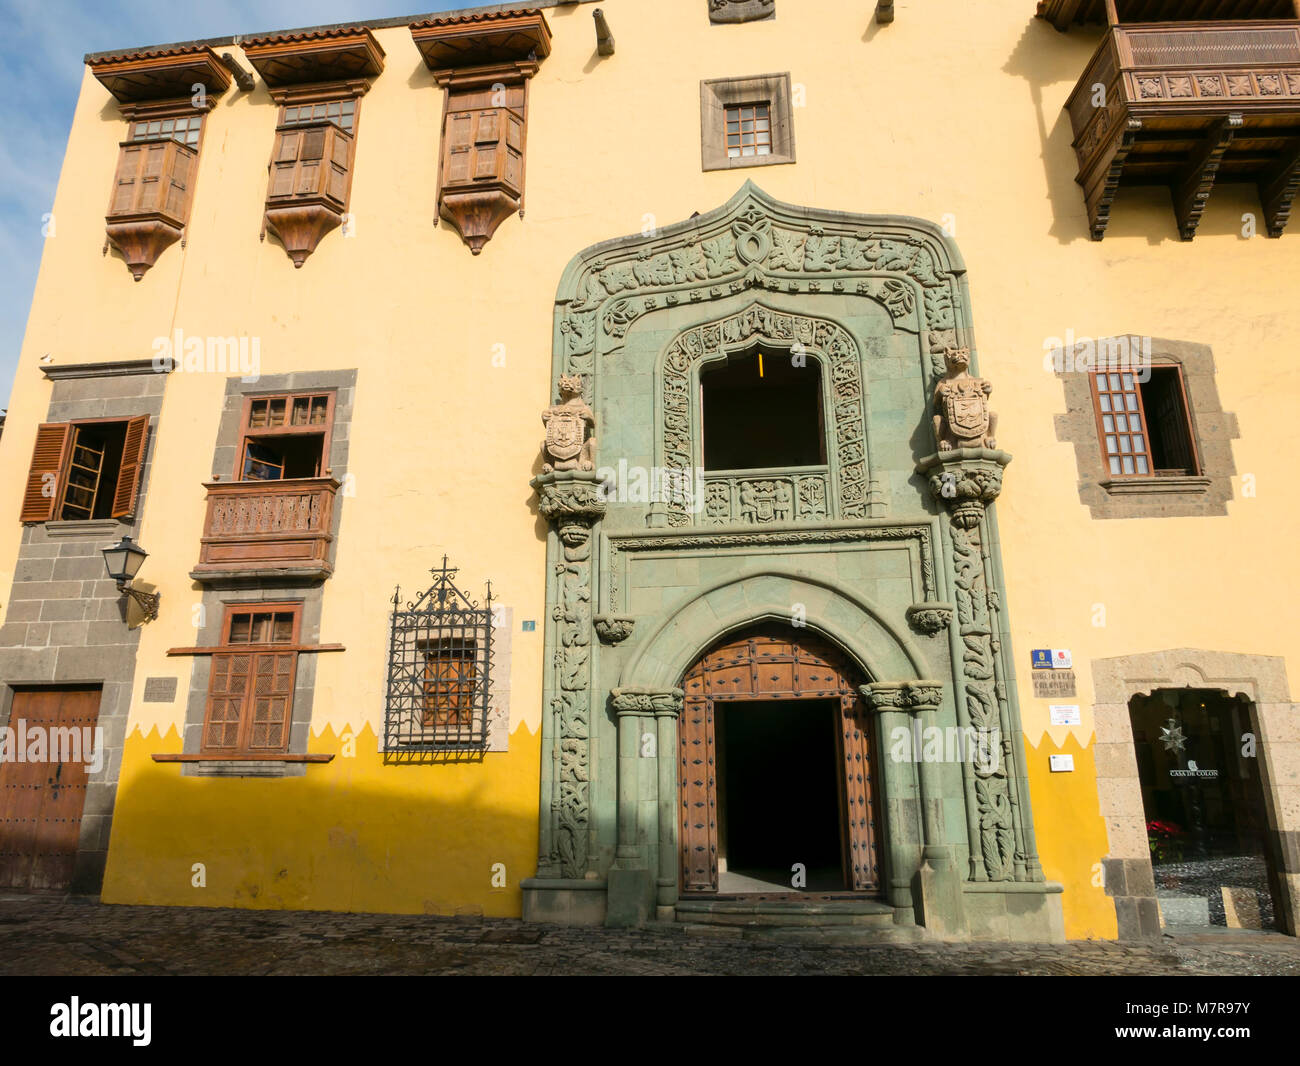 Casa de Colon (Christopher Columbus' House) Vegueta, Las Palmas de Gran Canaria, Canary Islands, Spain. Stock Photo